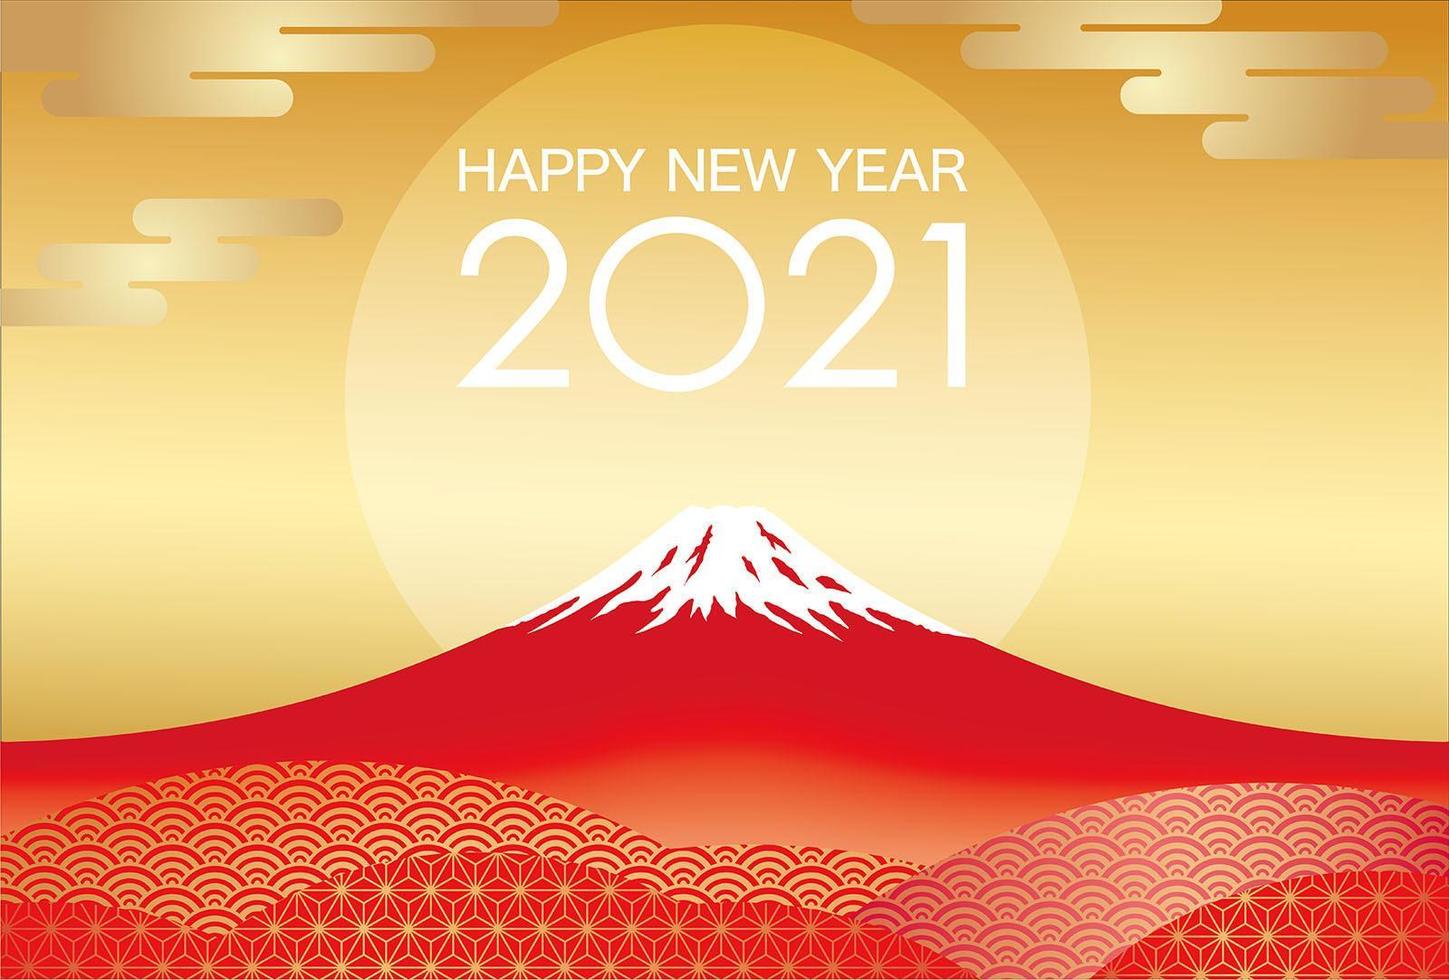 Plantilla de tarjeta de felicitación de año nuevo 2021 con mt. fuji vector